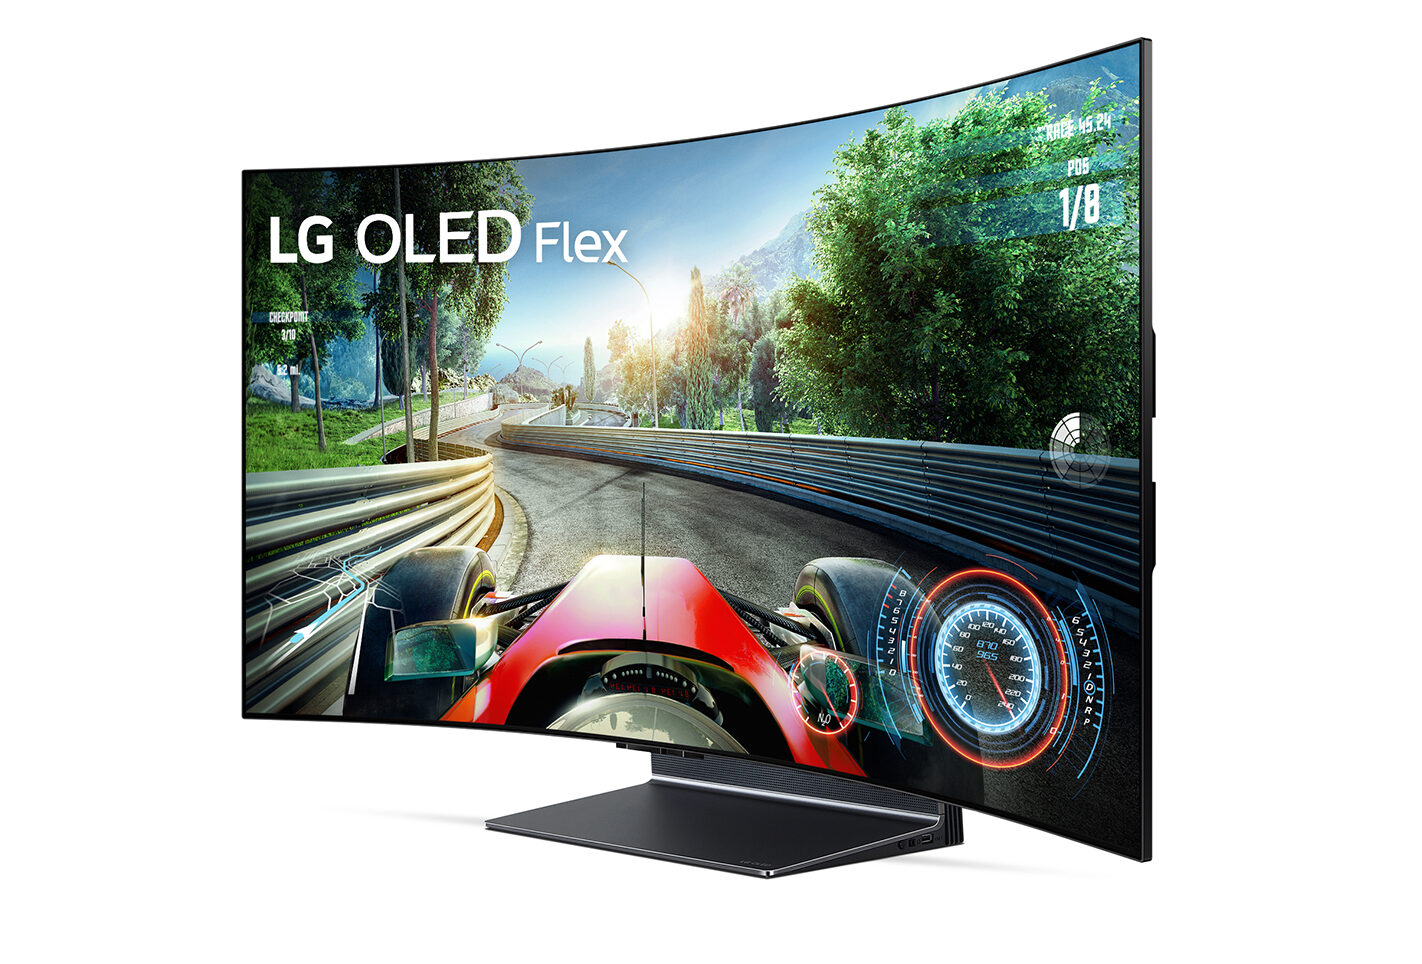 Экран телевизора LG OLED Flex LX3 изгибается по нажатию кнопки на пульте